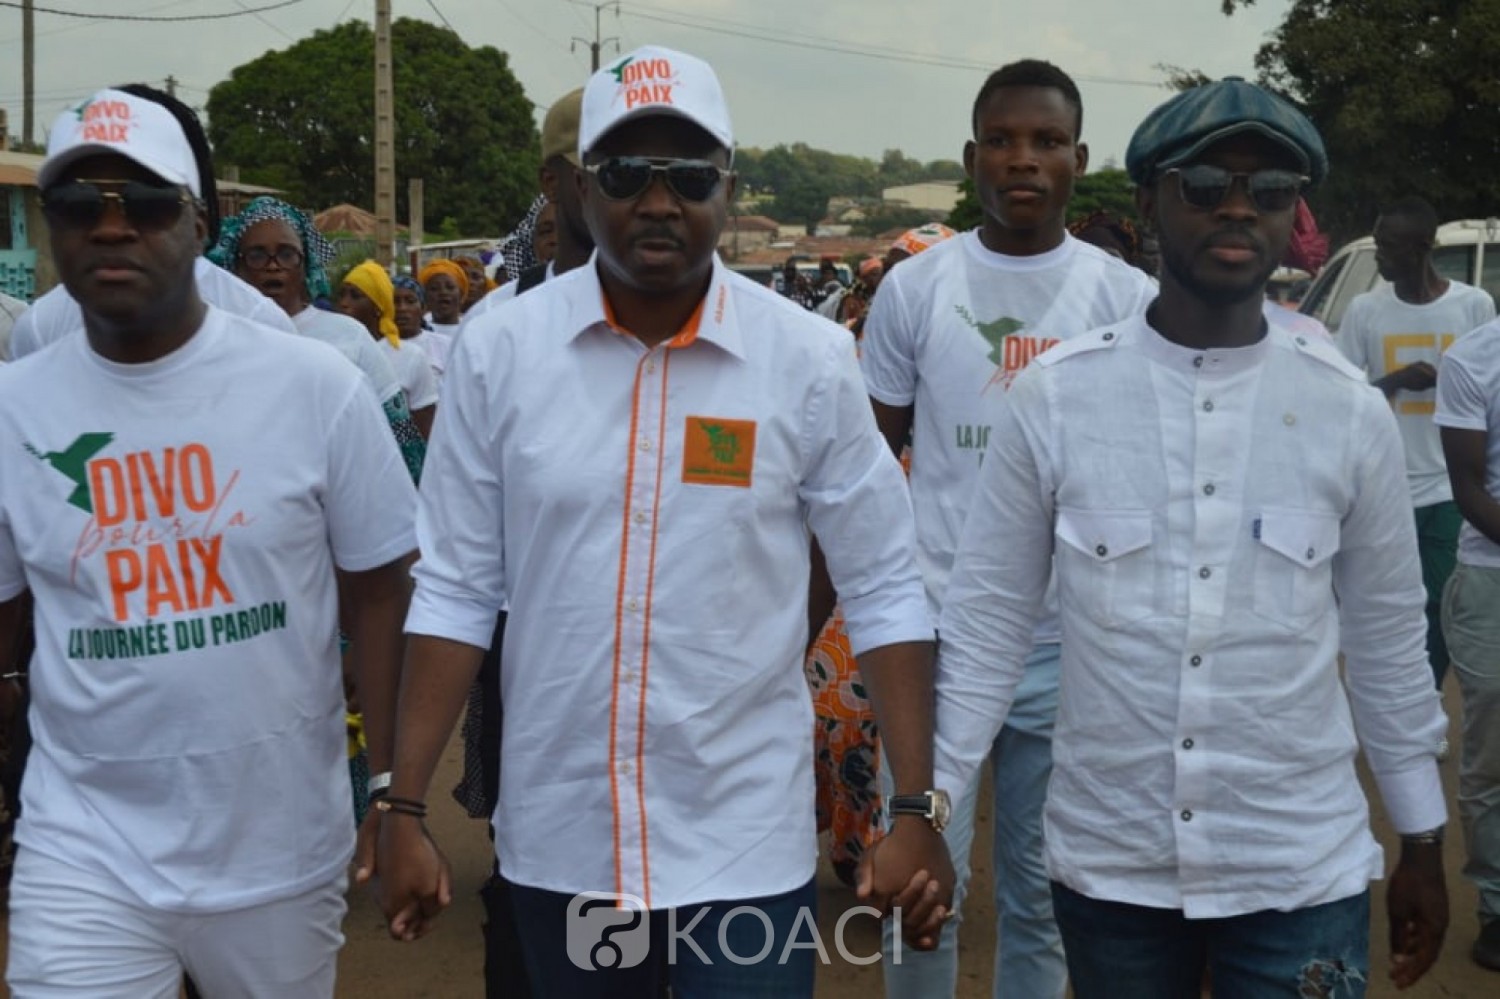 Côte d'Ivoire : Après des troubles, la paix et le pardon célébrés à Divo sous l'impulsion de Hassan Kanté cadre du Loh Djiboua